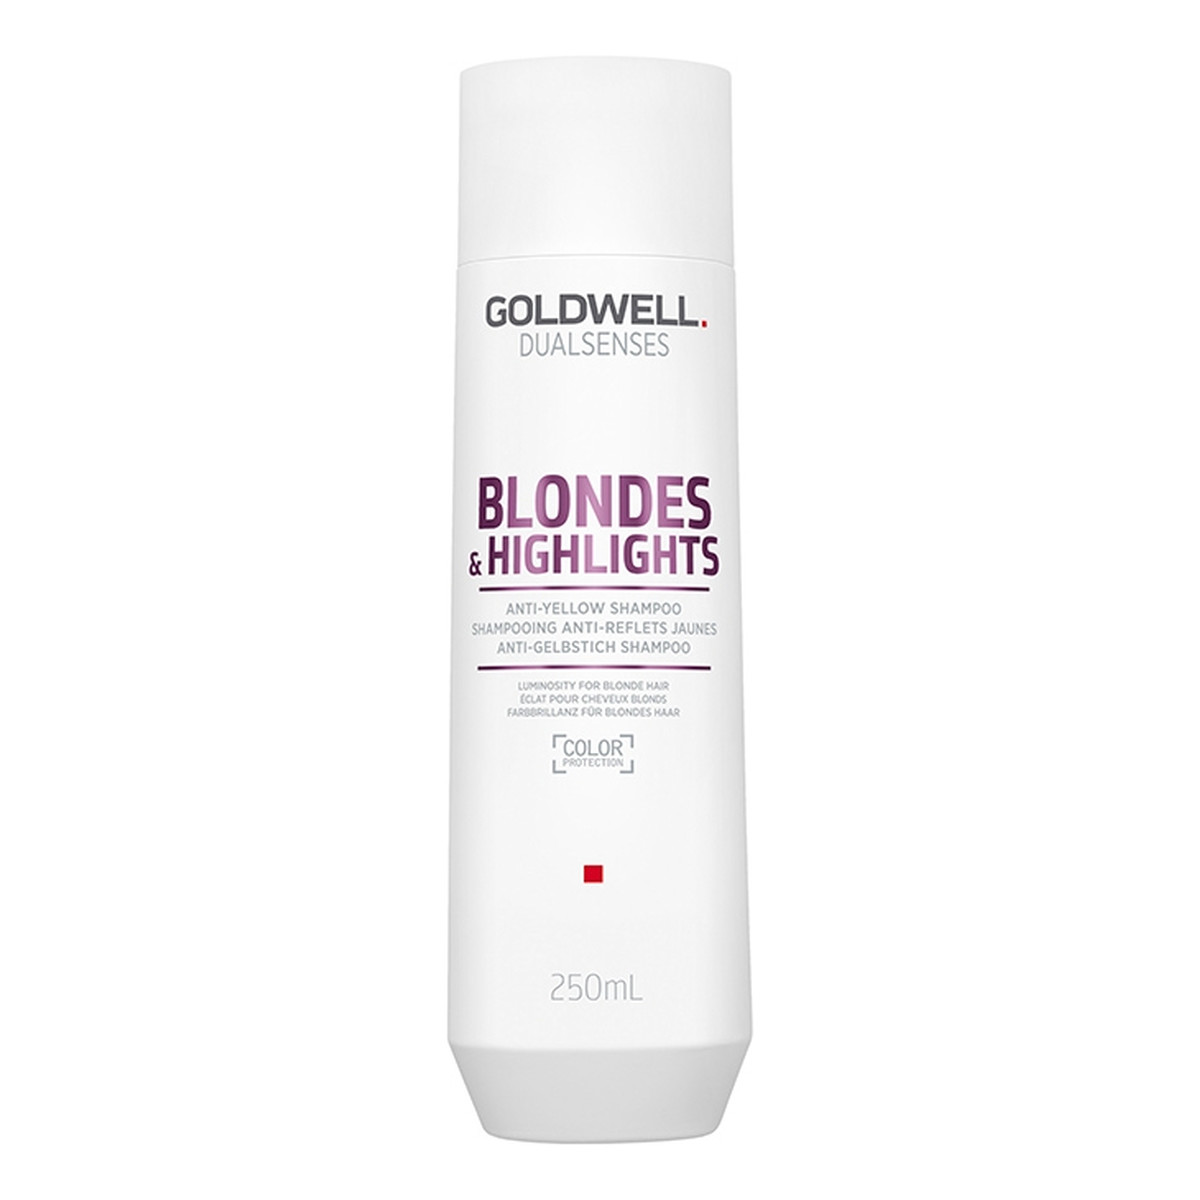 Goldwell Dualsenses Blondes & Highlights Anti-Yellow Shampoo Szampon do włosów blond neutralizujący żółty odcień 250ml